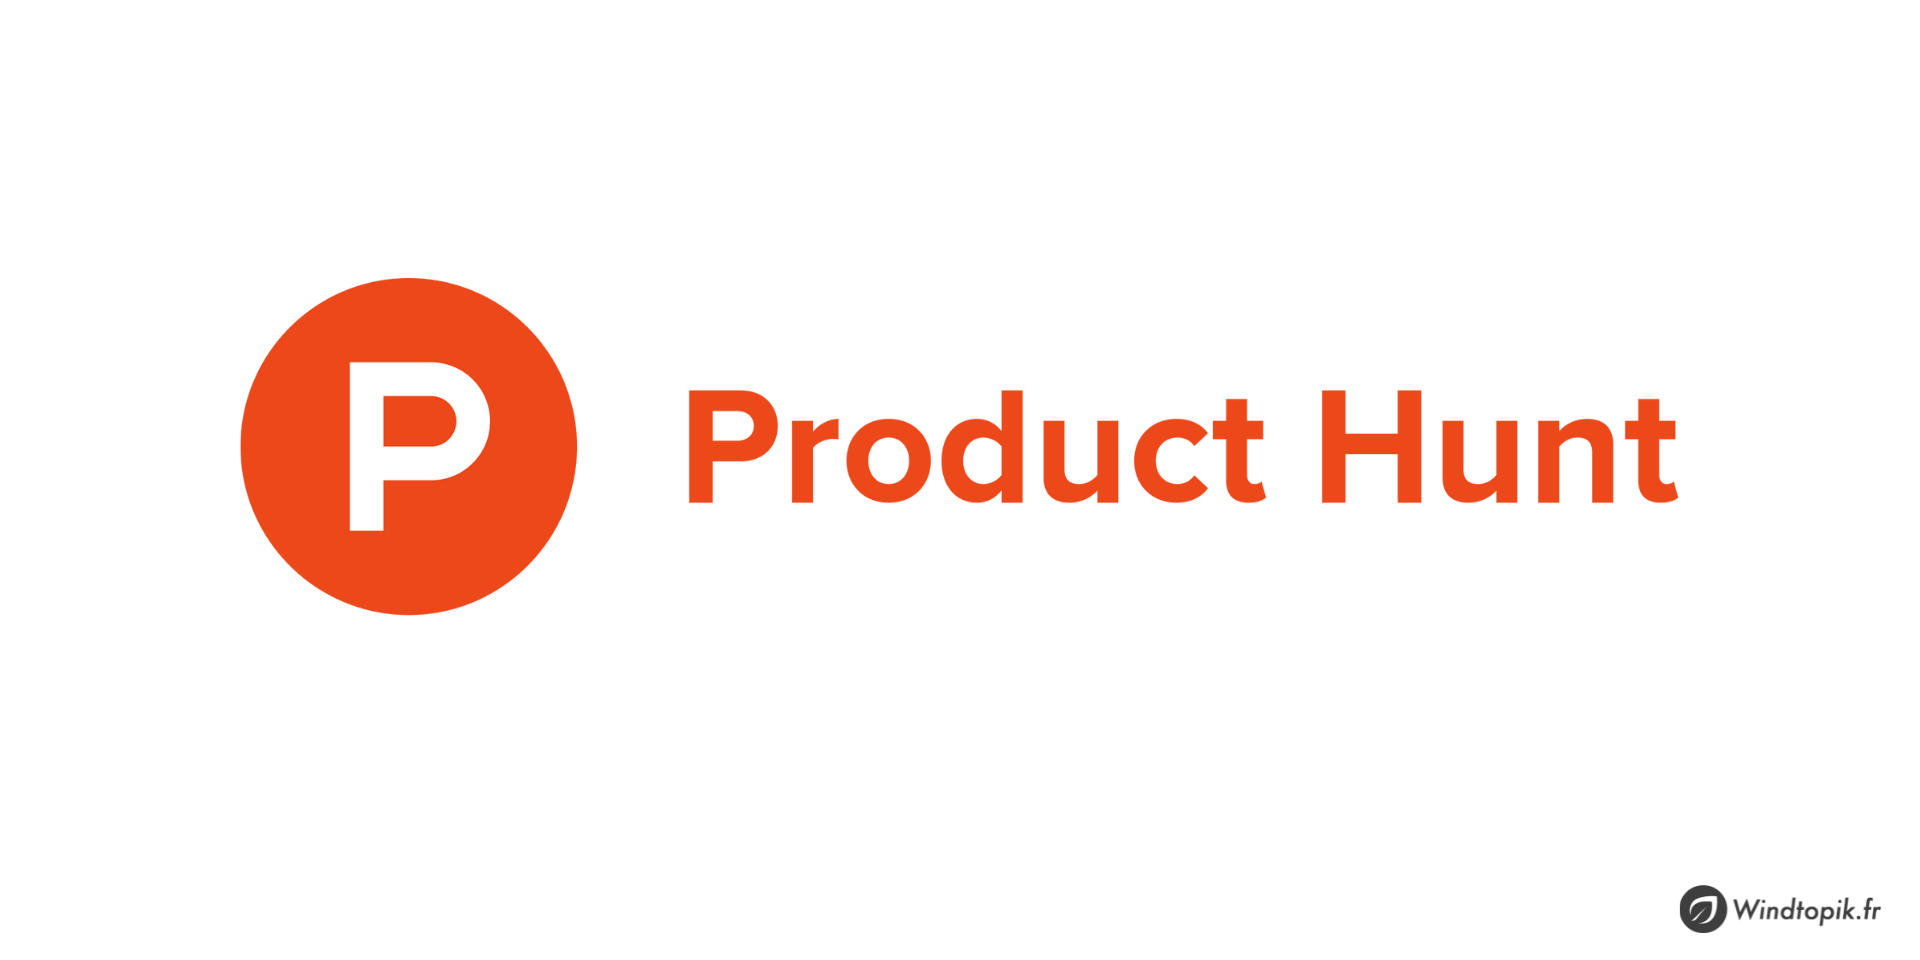 Qu’est-ce que Product Hunt et comment l’utiliser ?